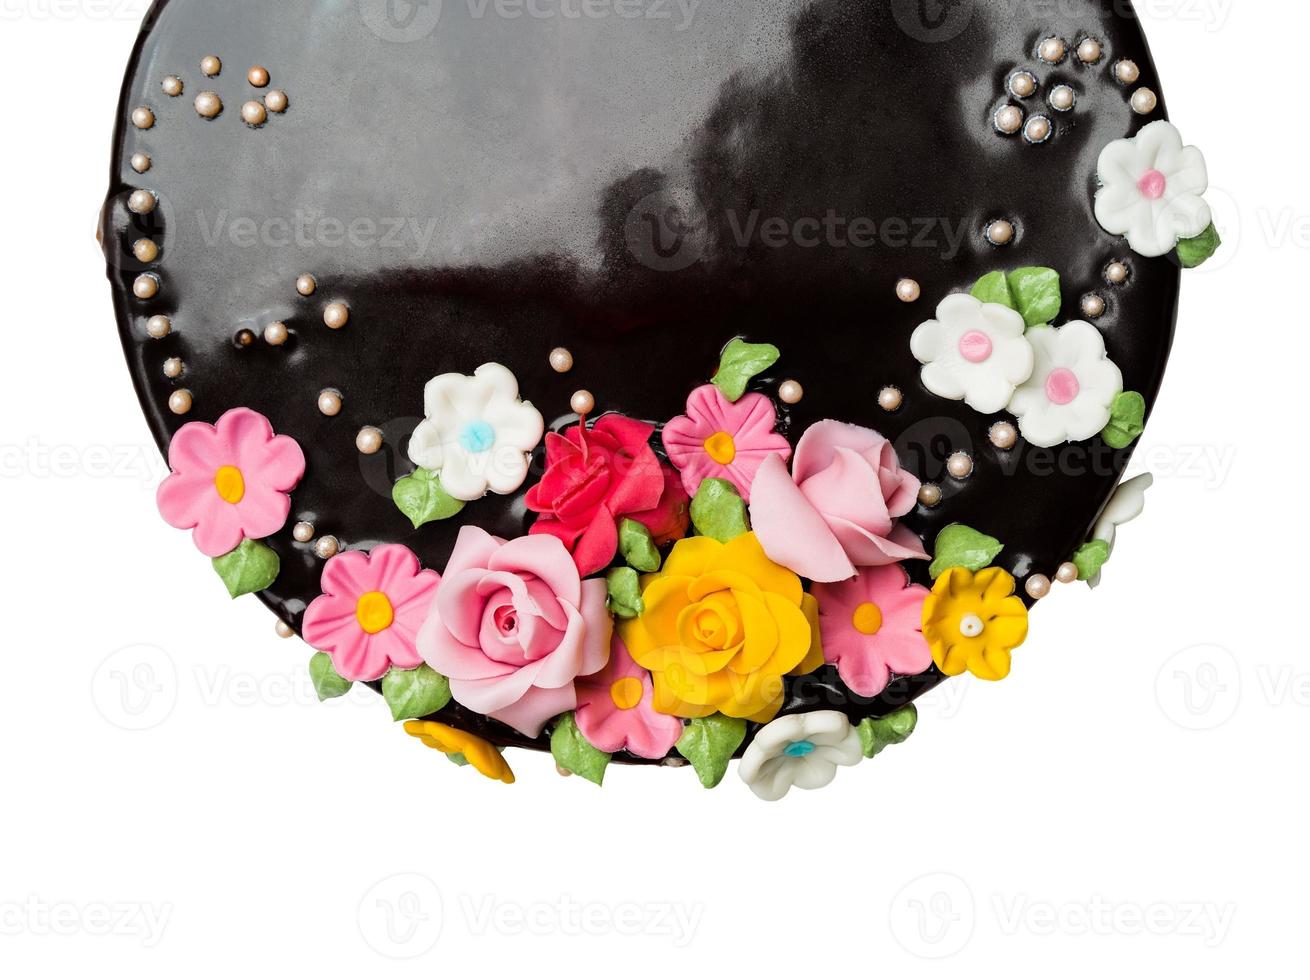 vue de dessus gros plan décorations de gâteaux au chocolat avec des fruits glacés colorés photo